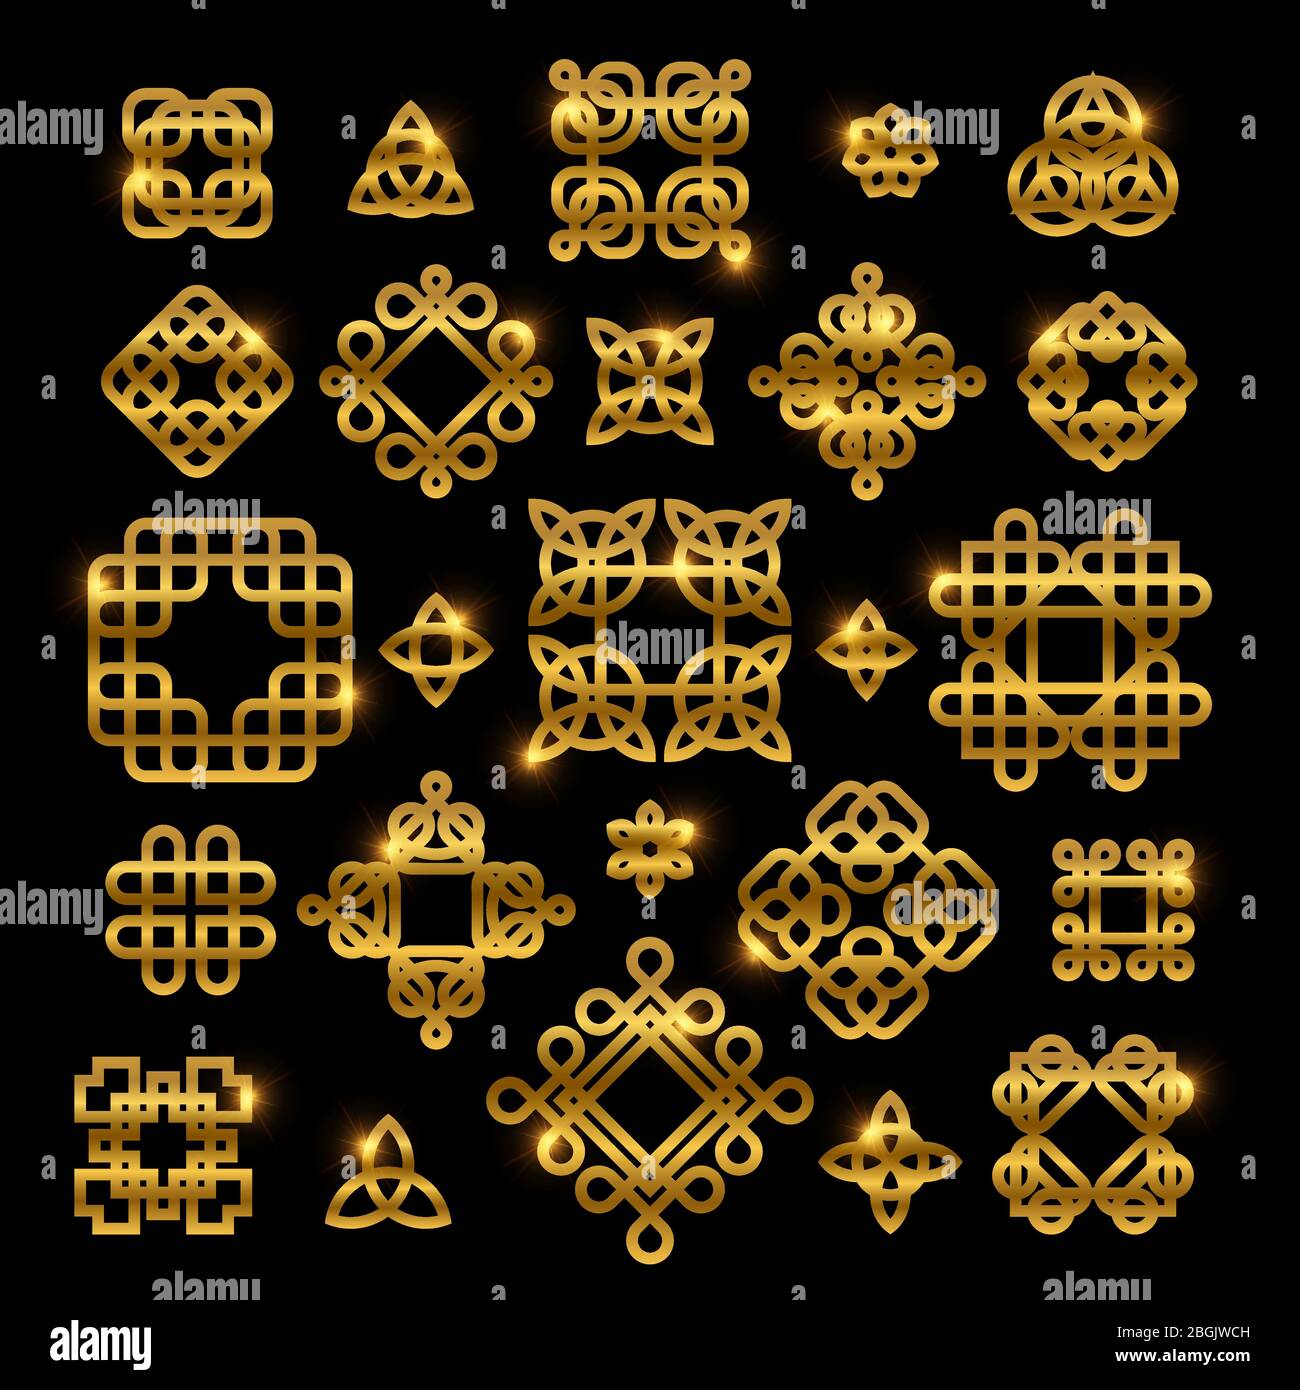 Goldene keltische Knoten mit glänzenden Elementen auf schwarzem Hintergrund isoliert. Vektor Knoten Icon Sammlung Ornament für Tattoo Muster, gälische Dekoration Illustration Stock Vektor